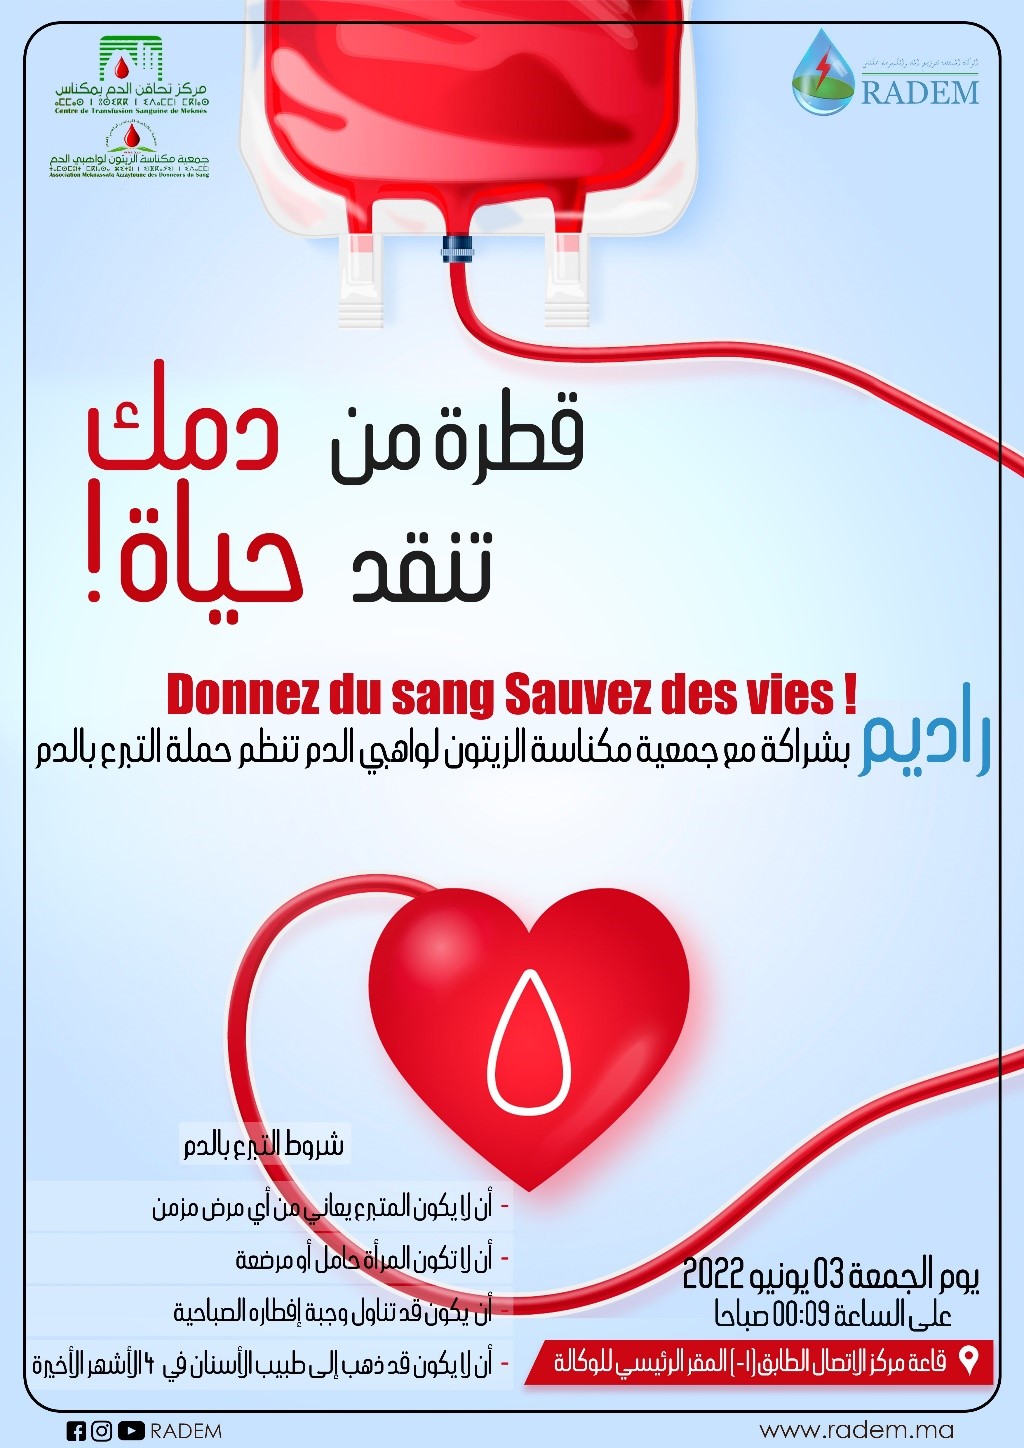 Campagne de don de sang organisée par la RADEM le 03 juin 2022